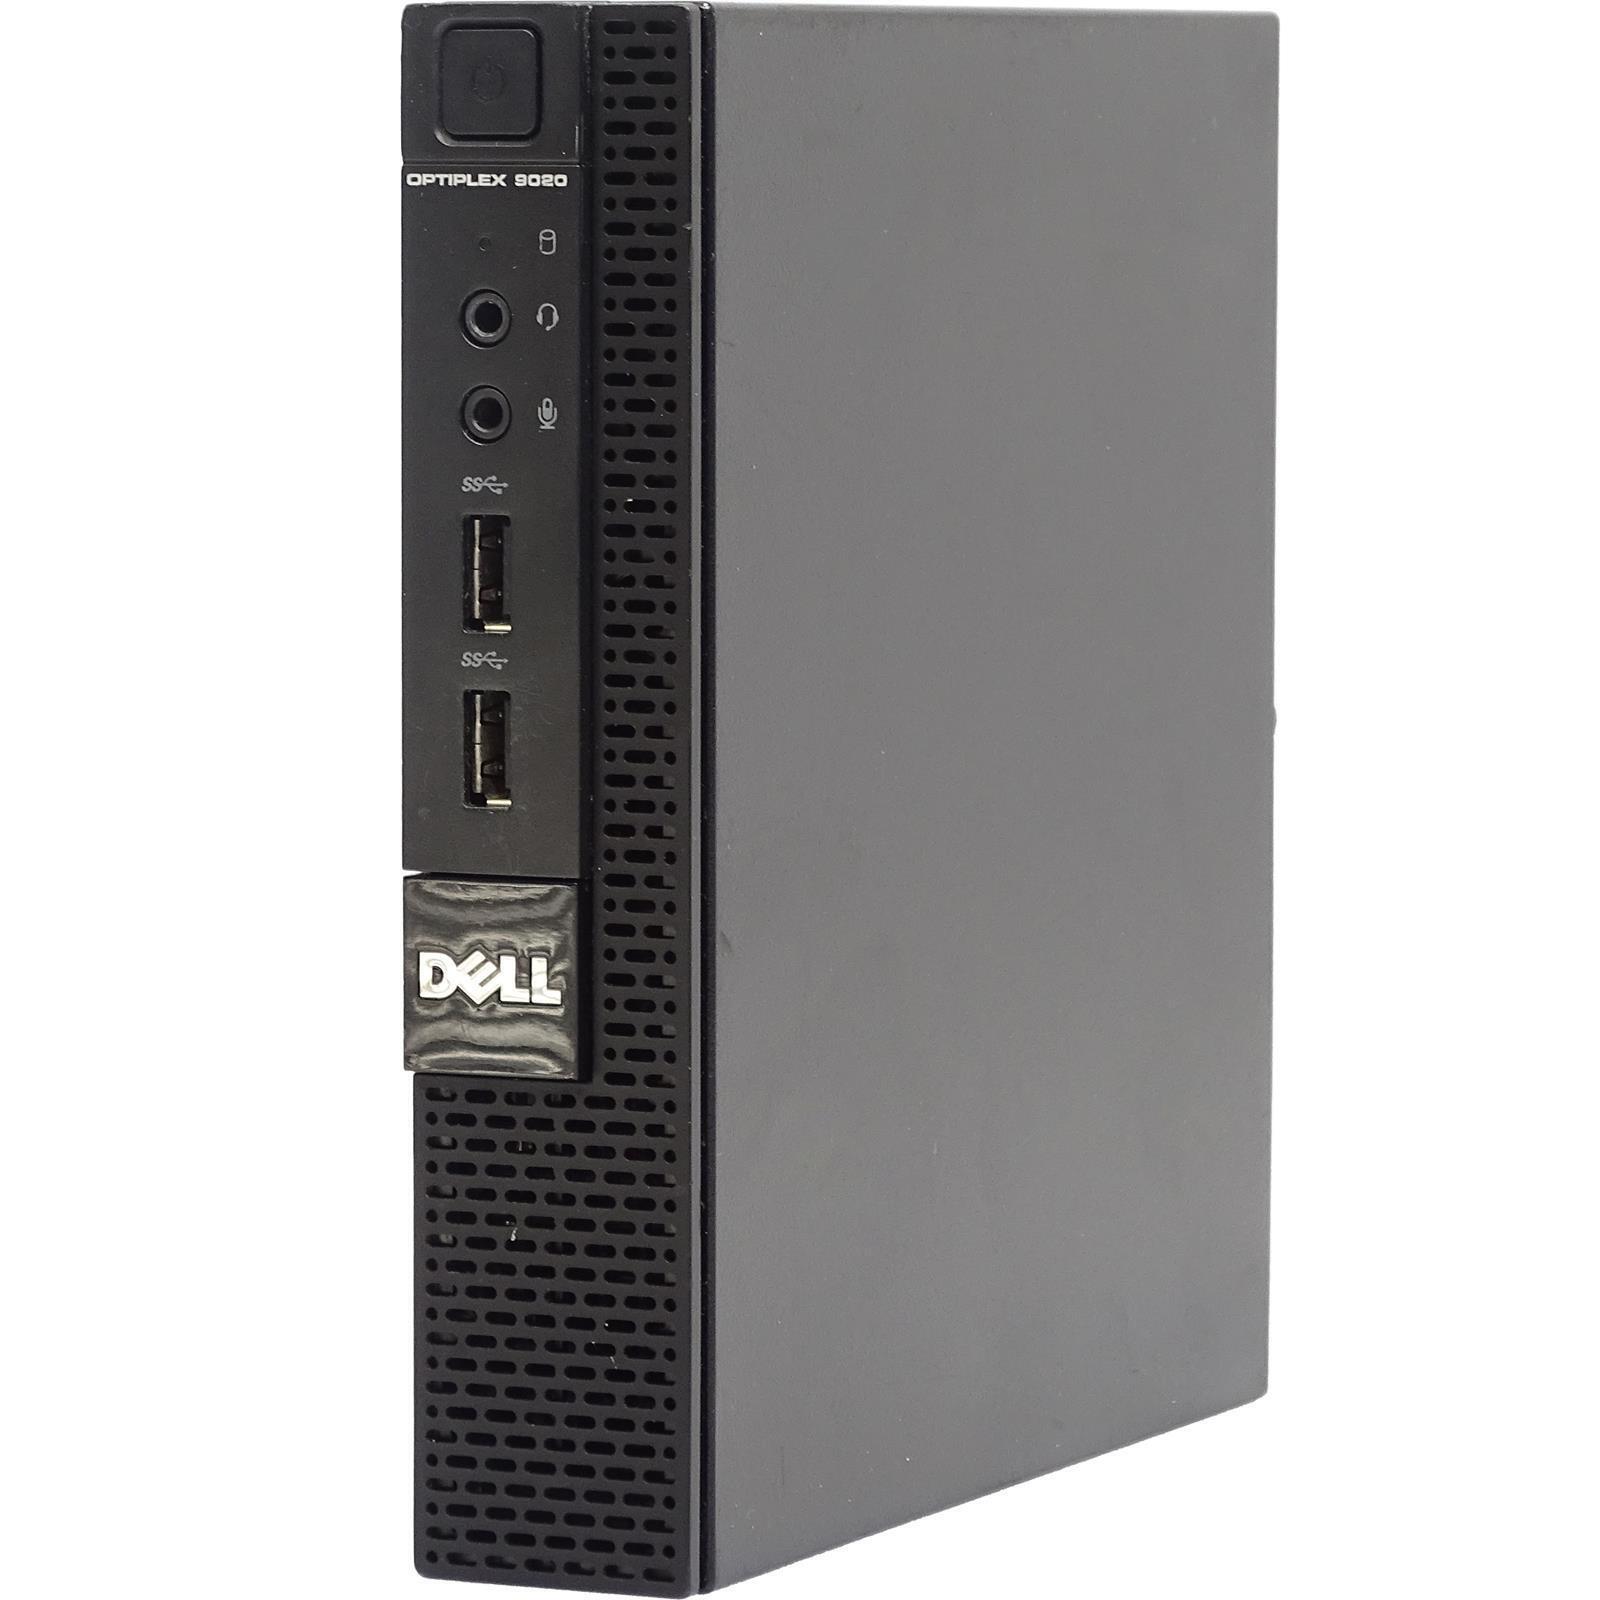 Dell OPTIPLEX 9020M Intel Core i5-4590T 8GB RAM 128GB SSD WINDOWS 10 PRO Desktop